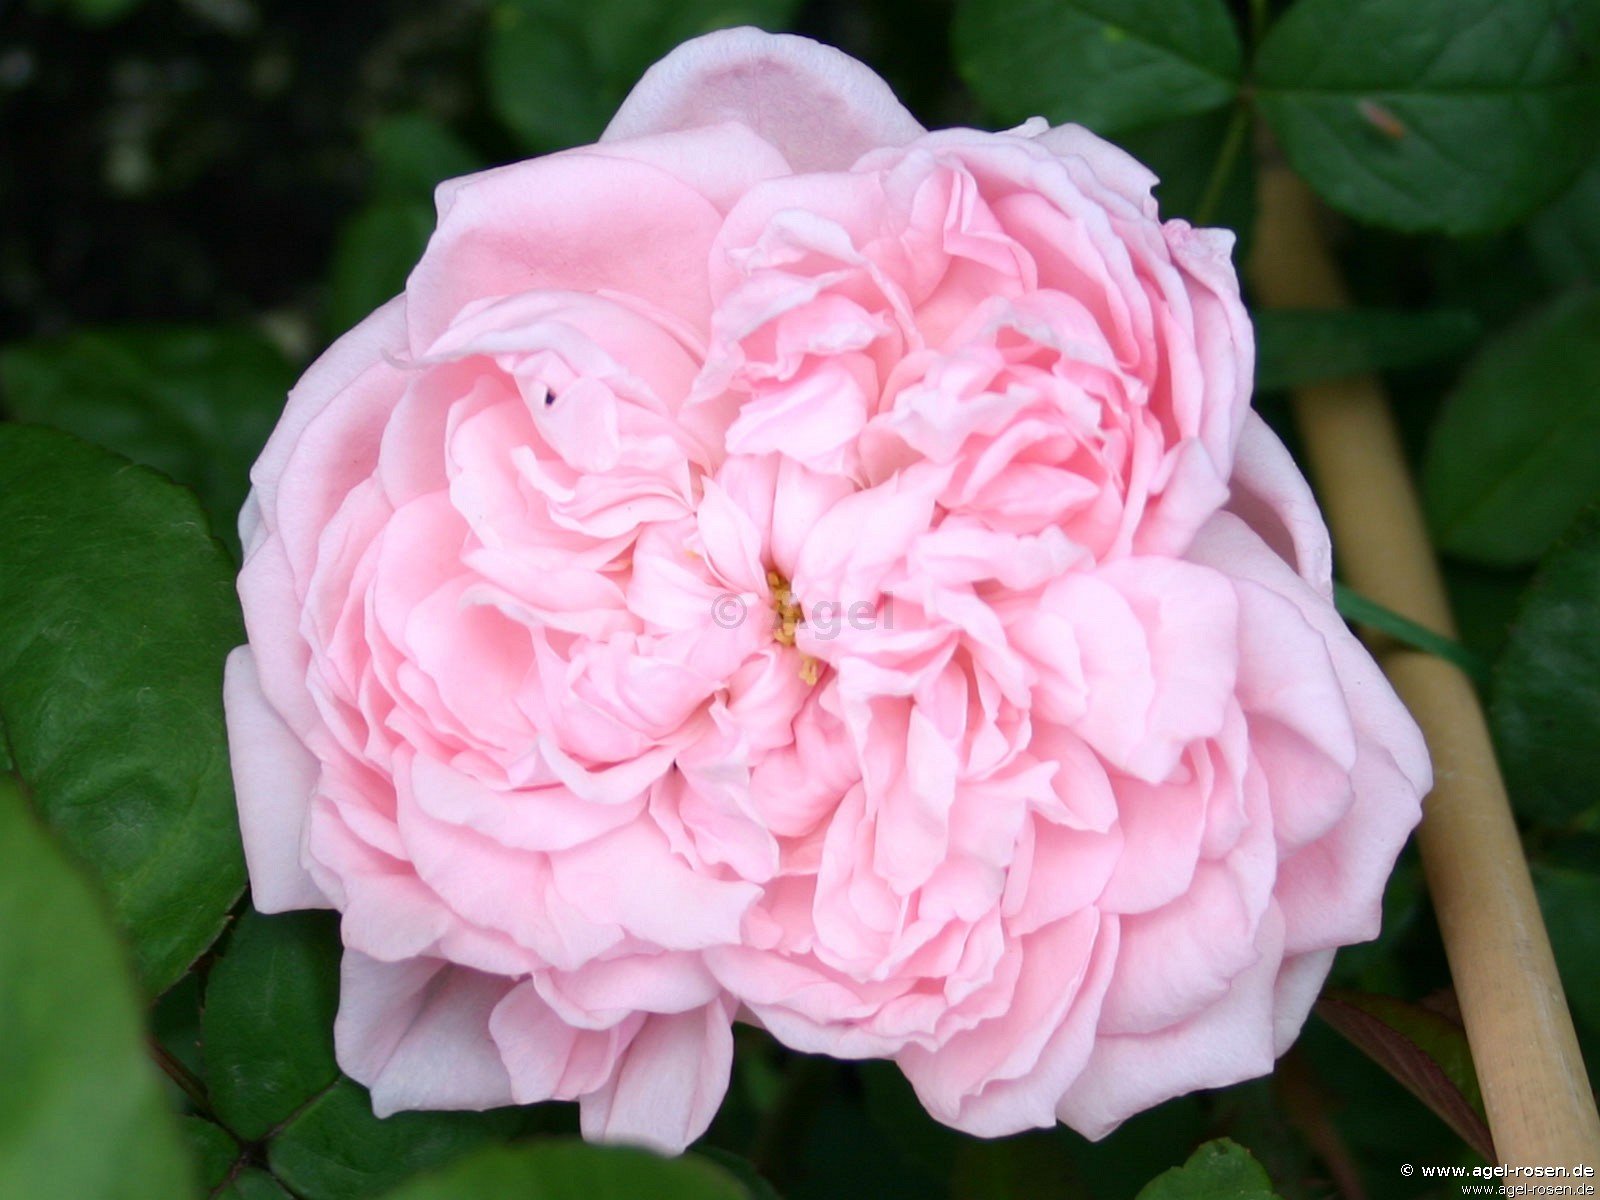 Rose ‘AUSmak‘ (wurzelnackte Rose)